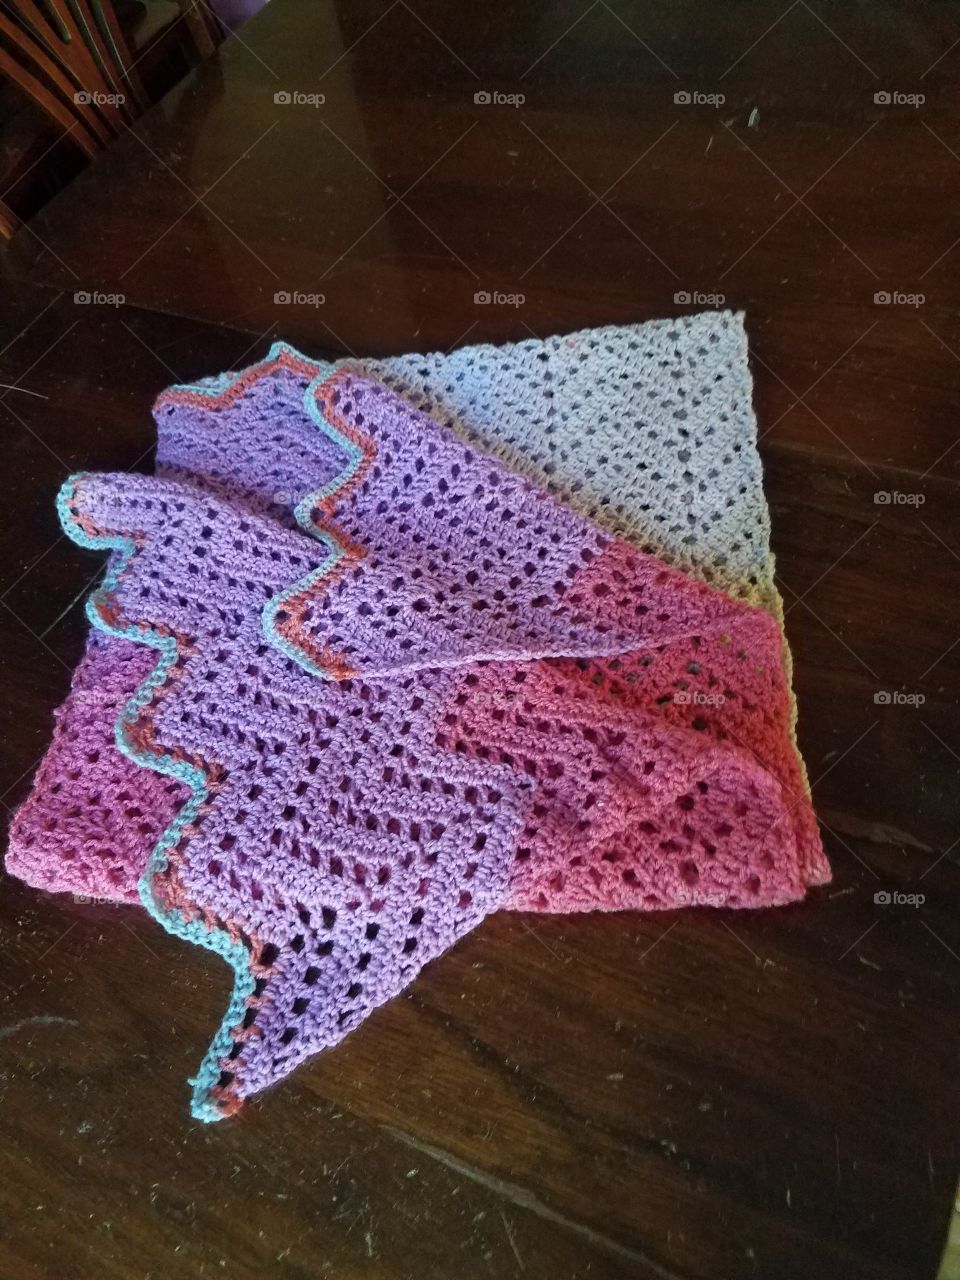 A shawl I made